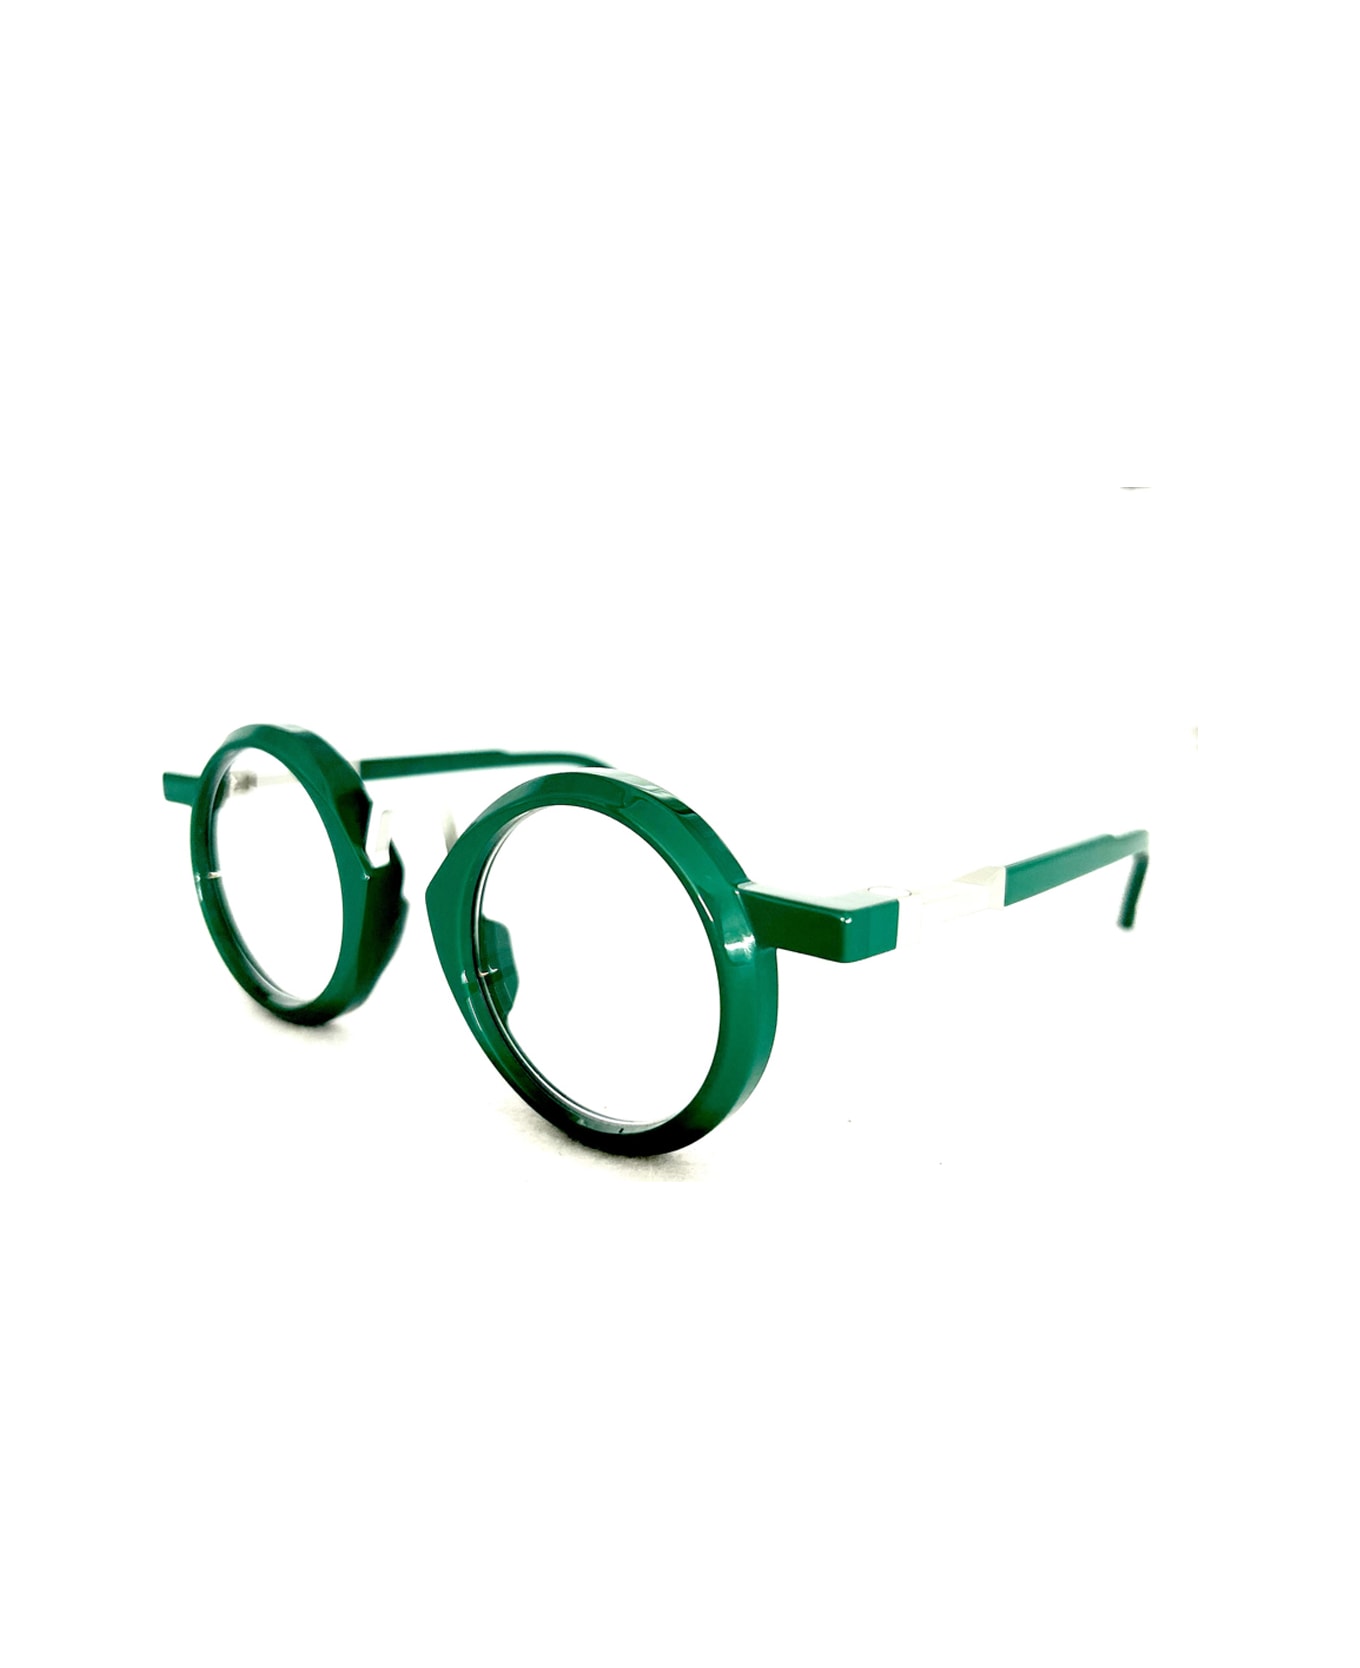 VAVA Wl0043 Green Glasses - Verde アイウェア